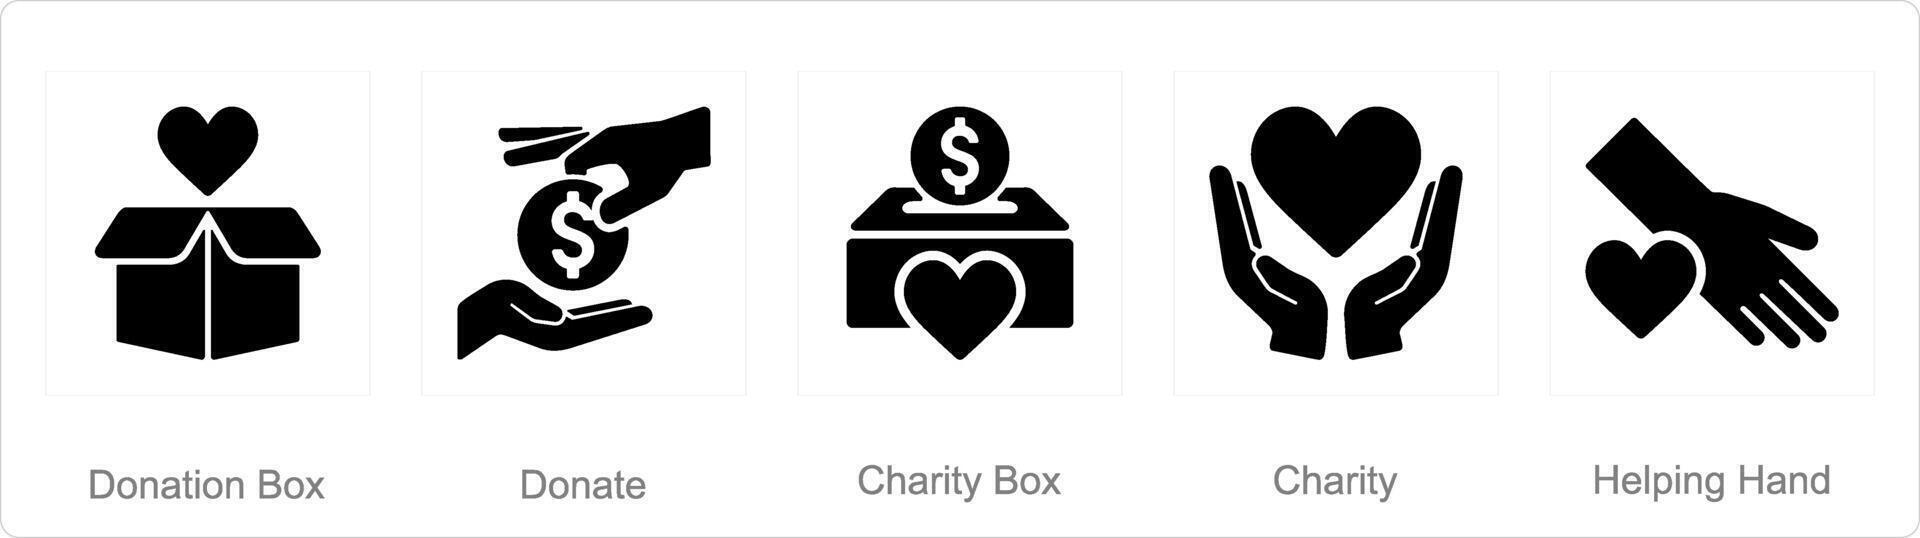 une ensemble de 5 charité et don Icônes comme don boîte, donner, charité boîte vecteur